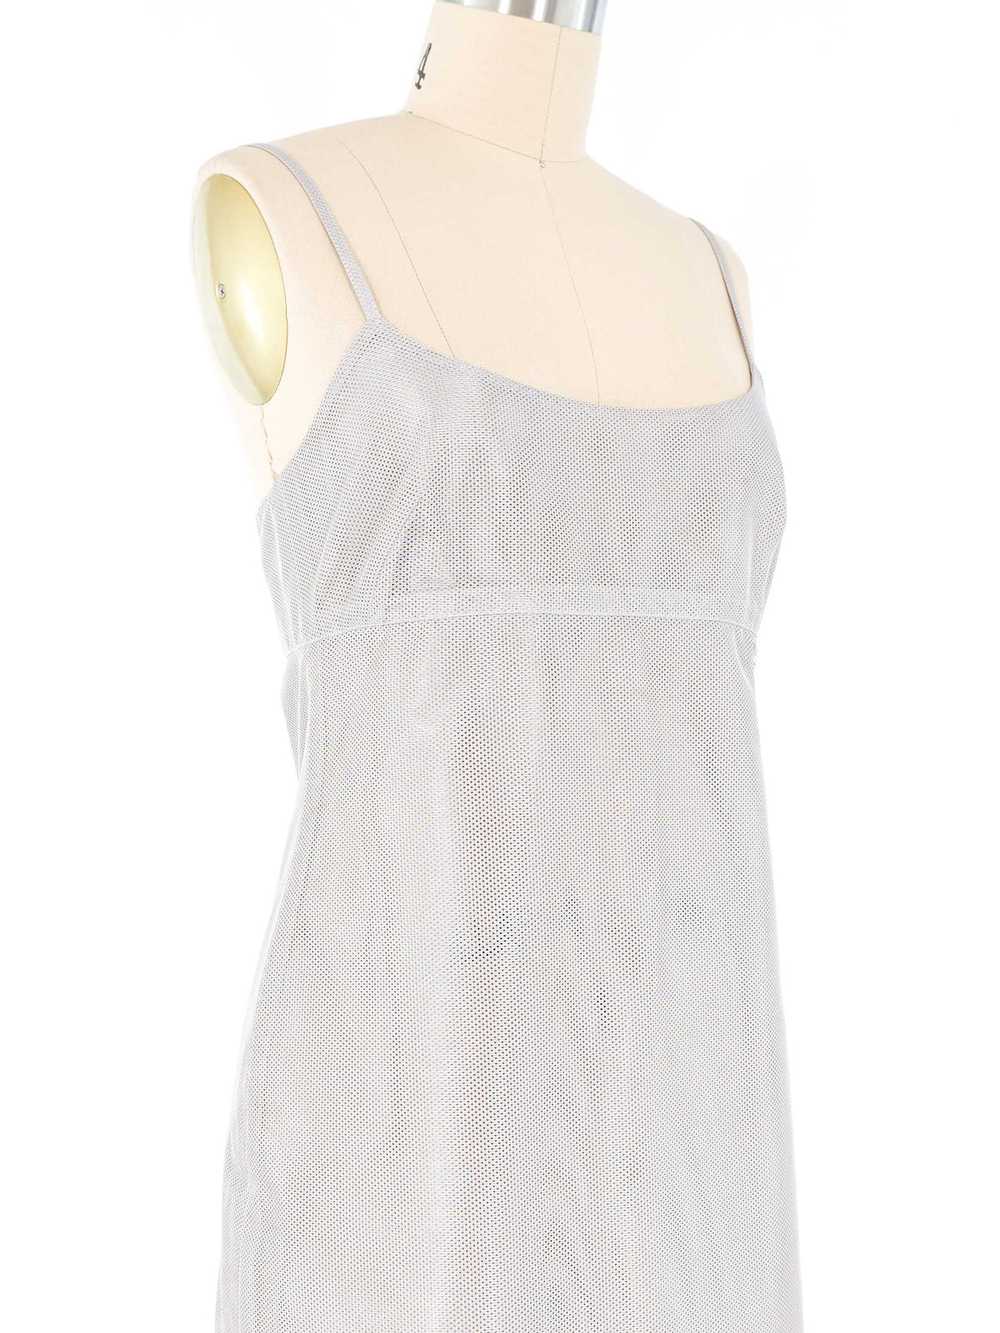 Chanel Silver Mesh Tank Dress - image 4